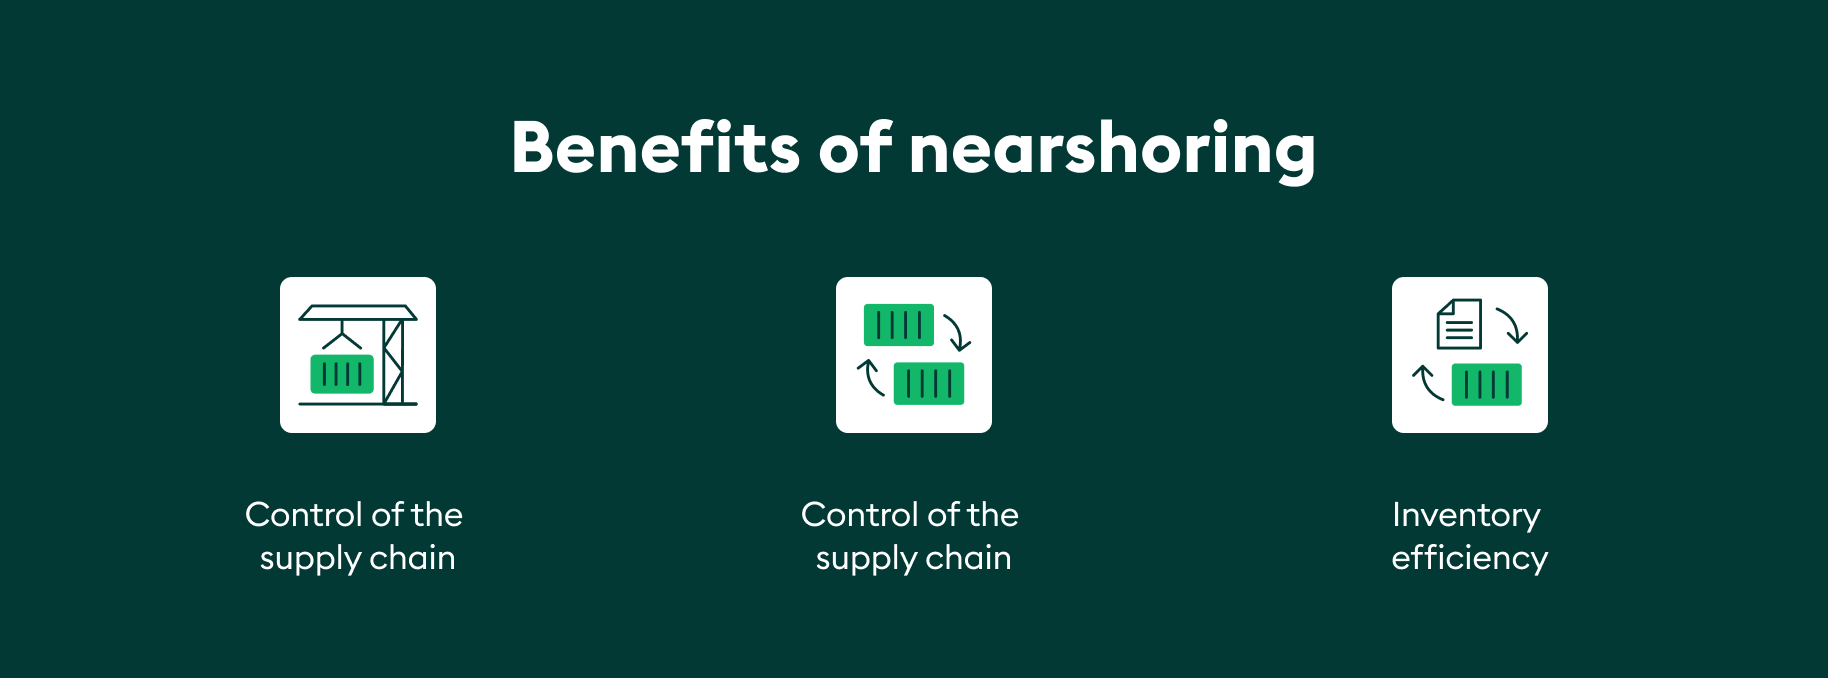 Benefits of nearshoring